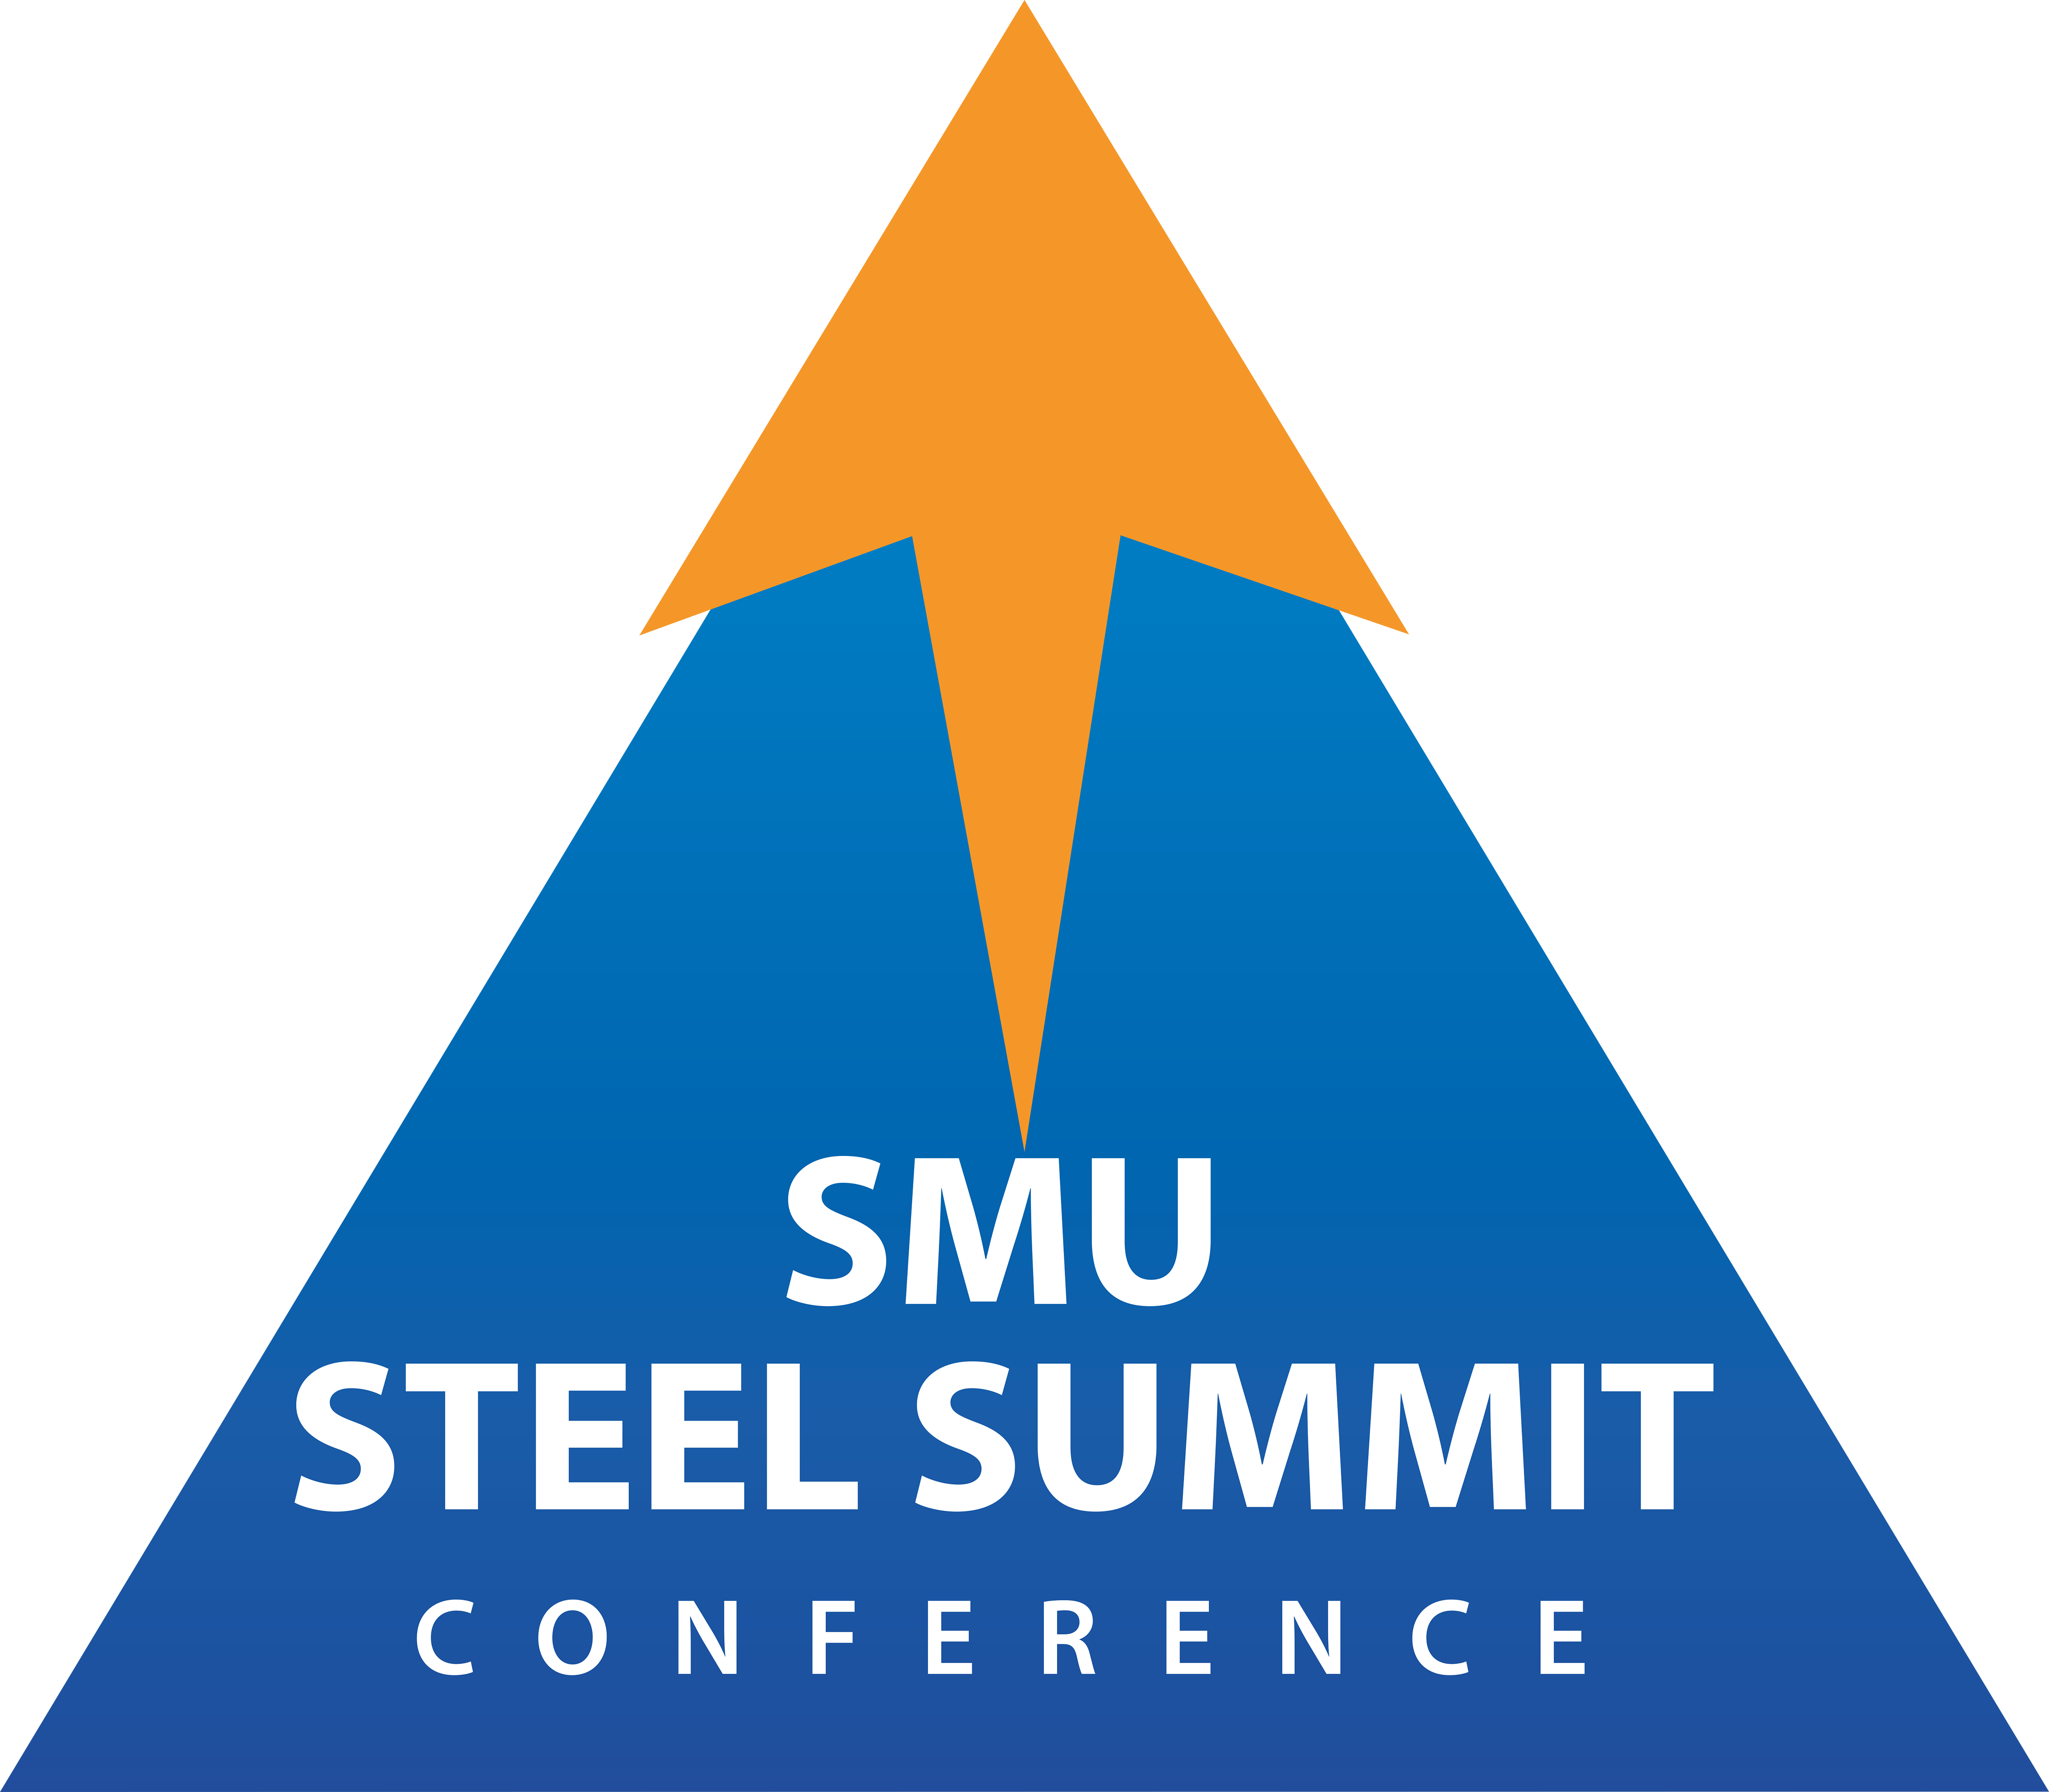 SMU Steel Summit